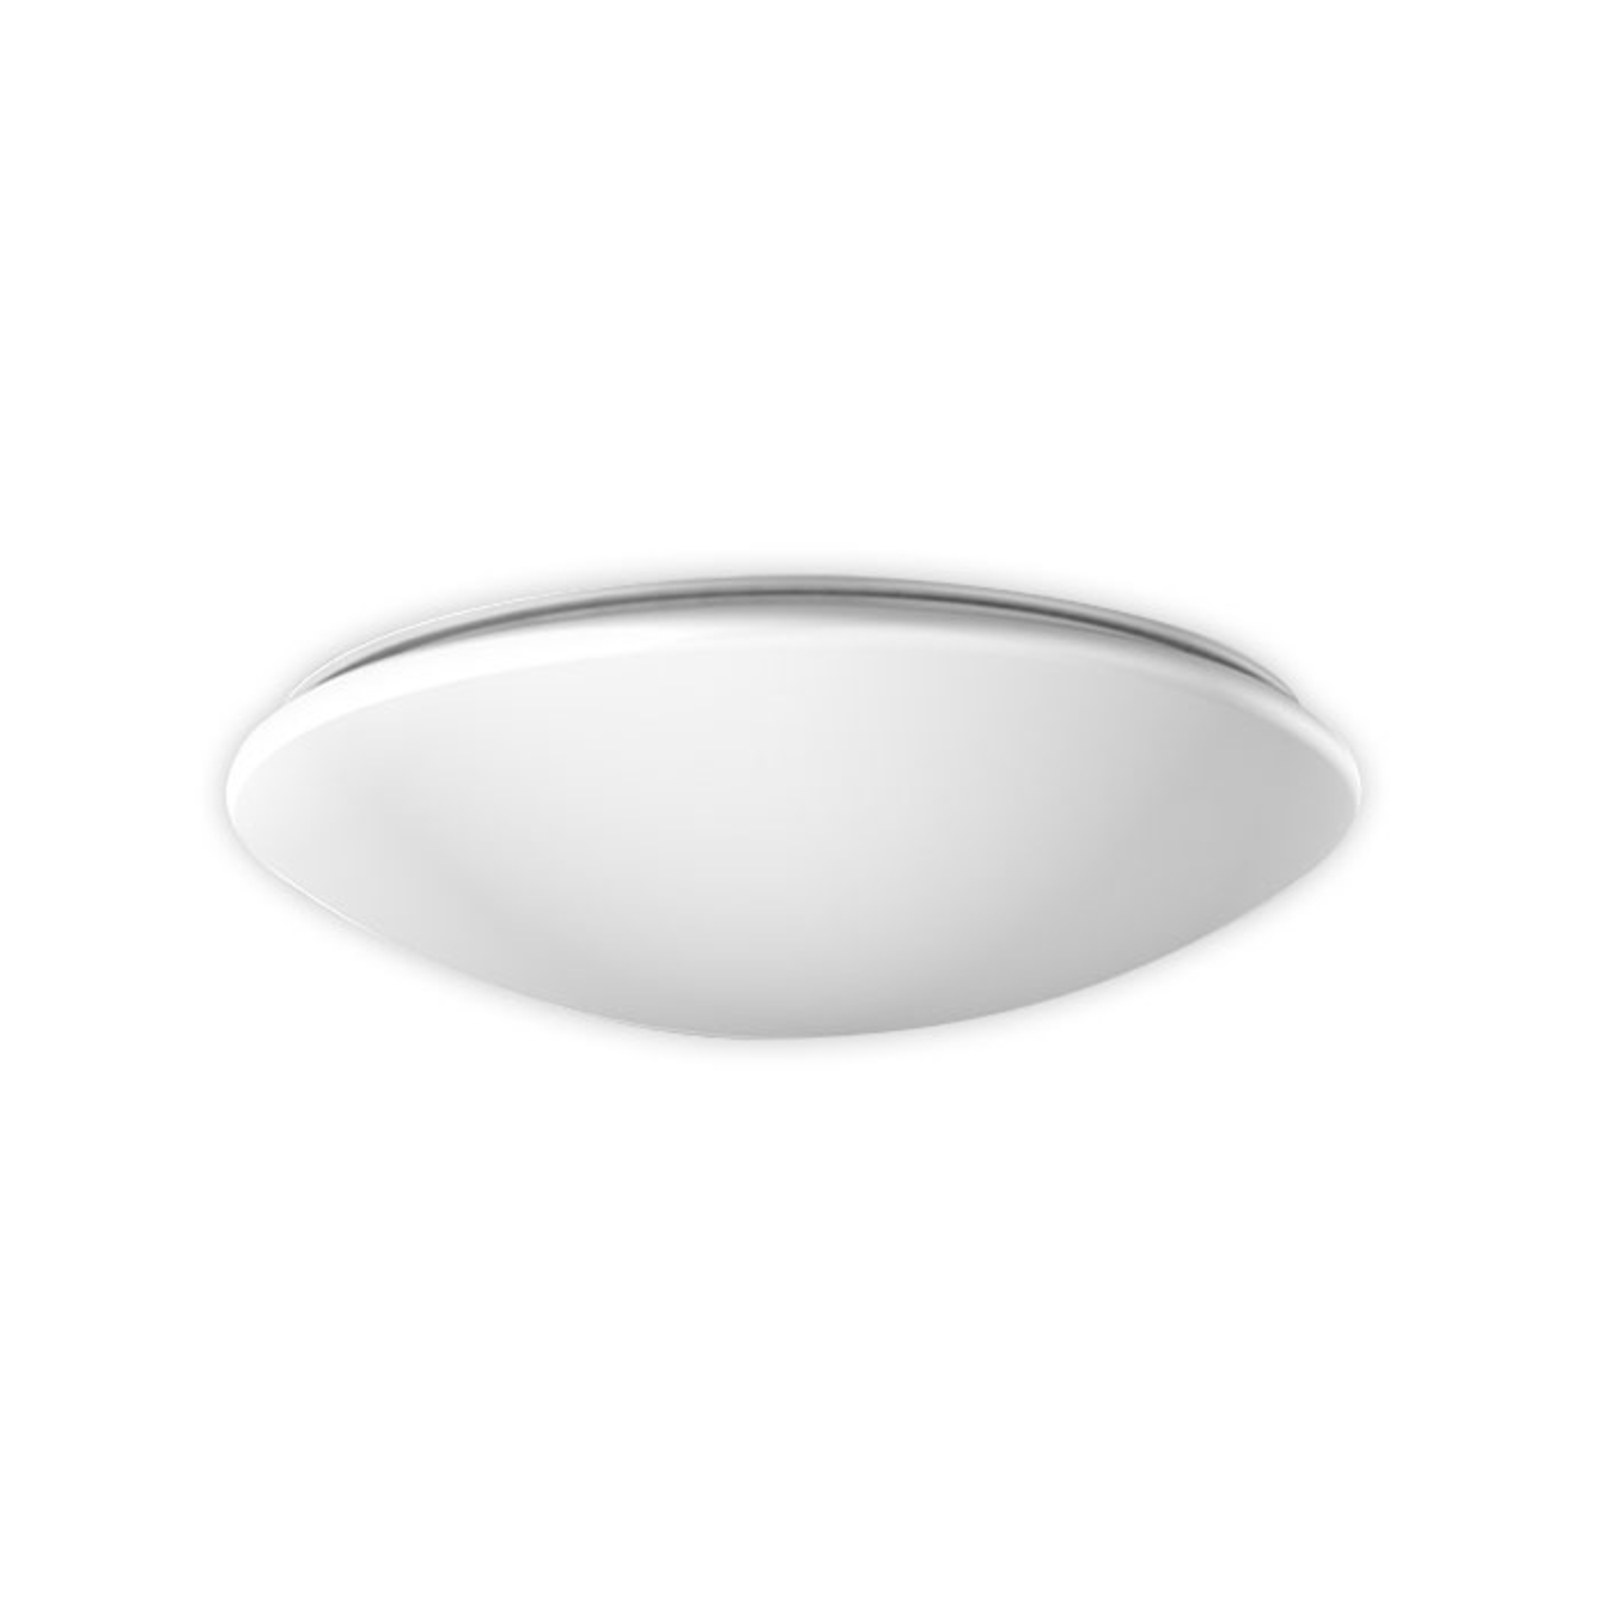 RZB Flat Polymero ceiling light DALI 21W 36cm 840